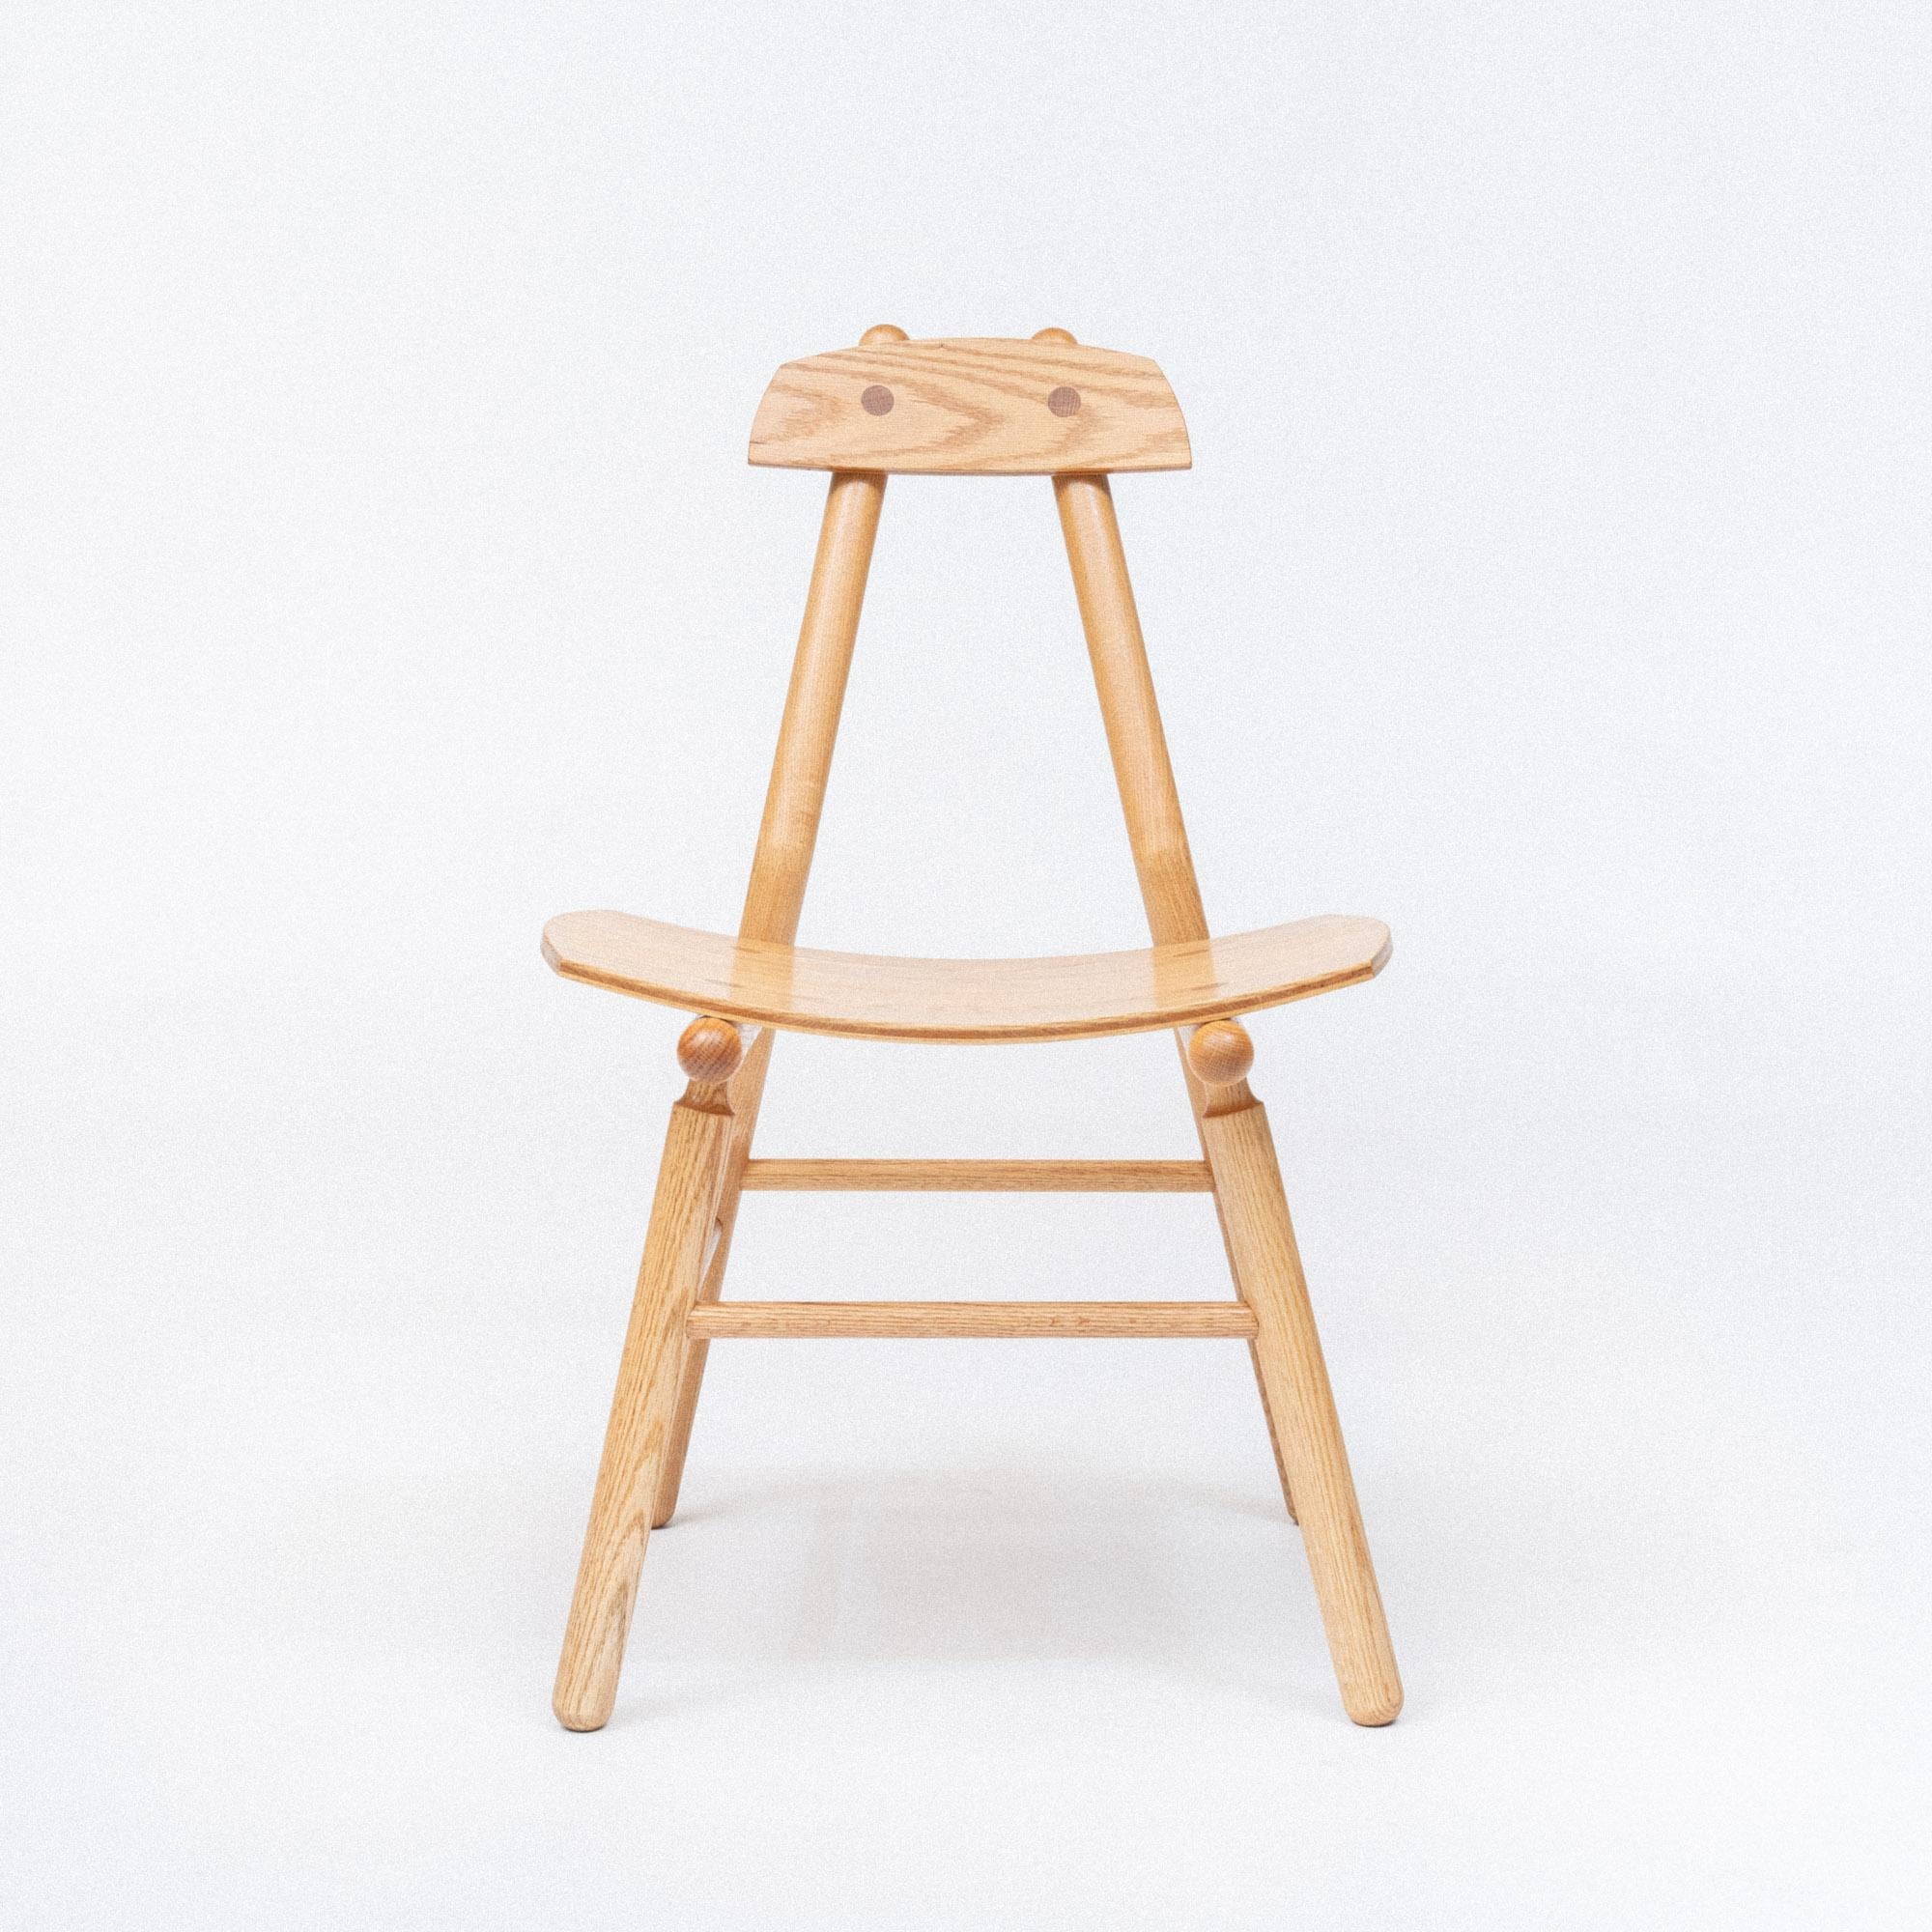 La chaise Hiro est un design contemporain et minimal fabriqué selon des méthodes traditionnelles et une menuiserie en bois massif. Le siège et le dossier sont fabriqués à partir de bois dur fraisé sur mesure, avec une courbe spécialement pressée qui